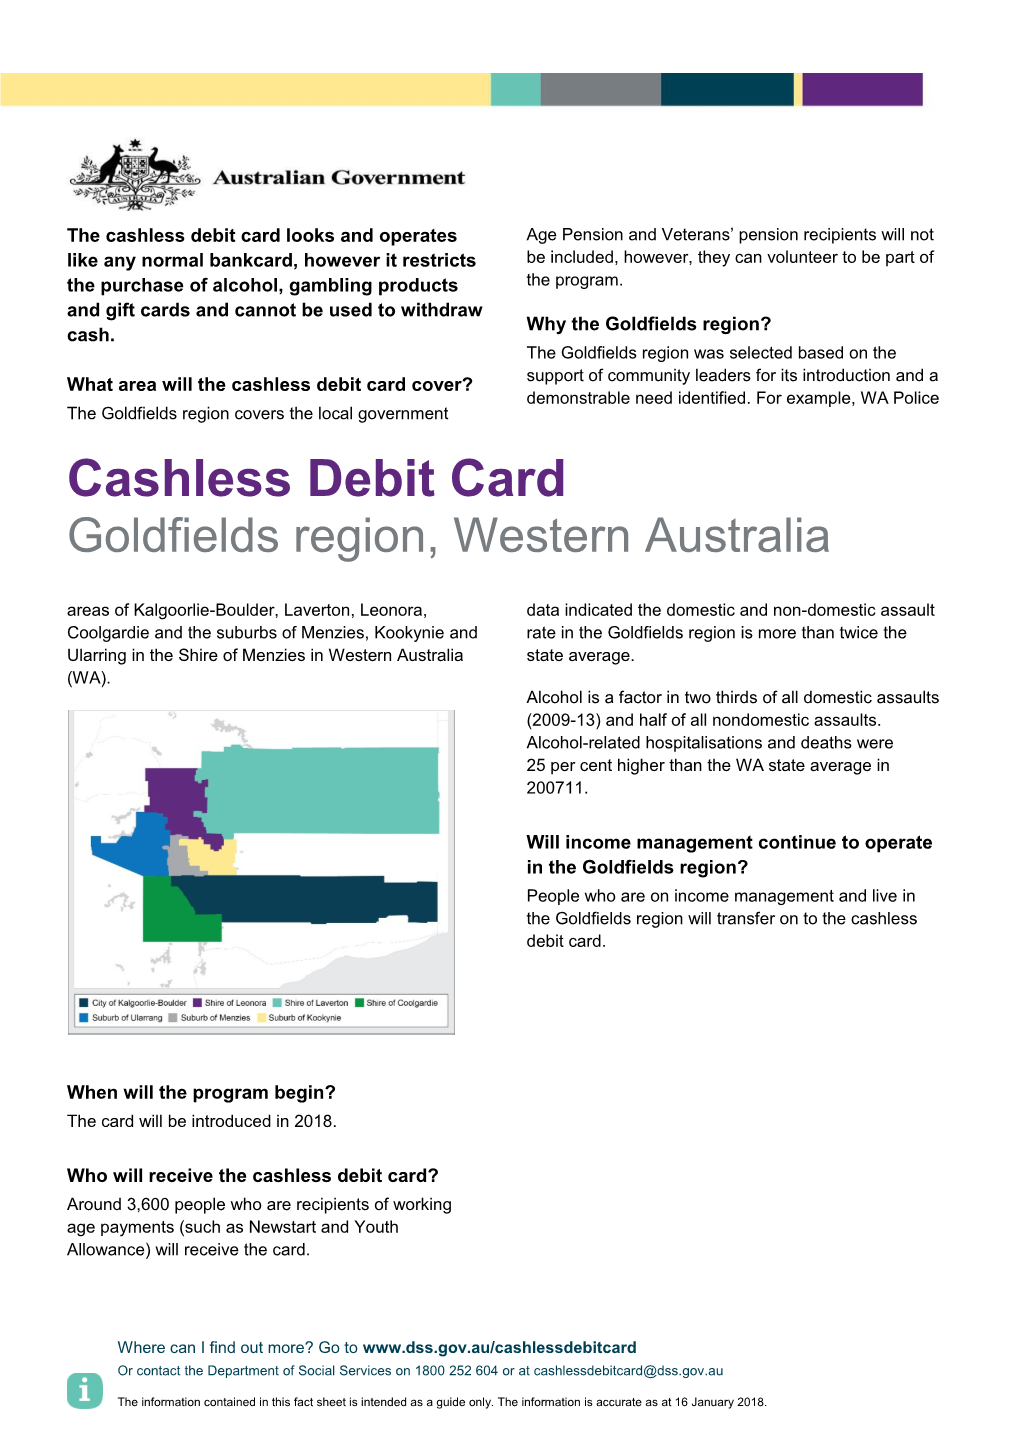 Cashless Debit Card Goldfields Region